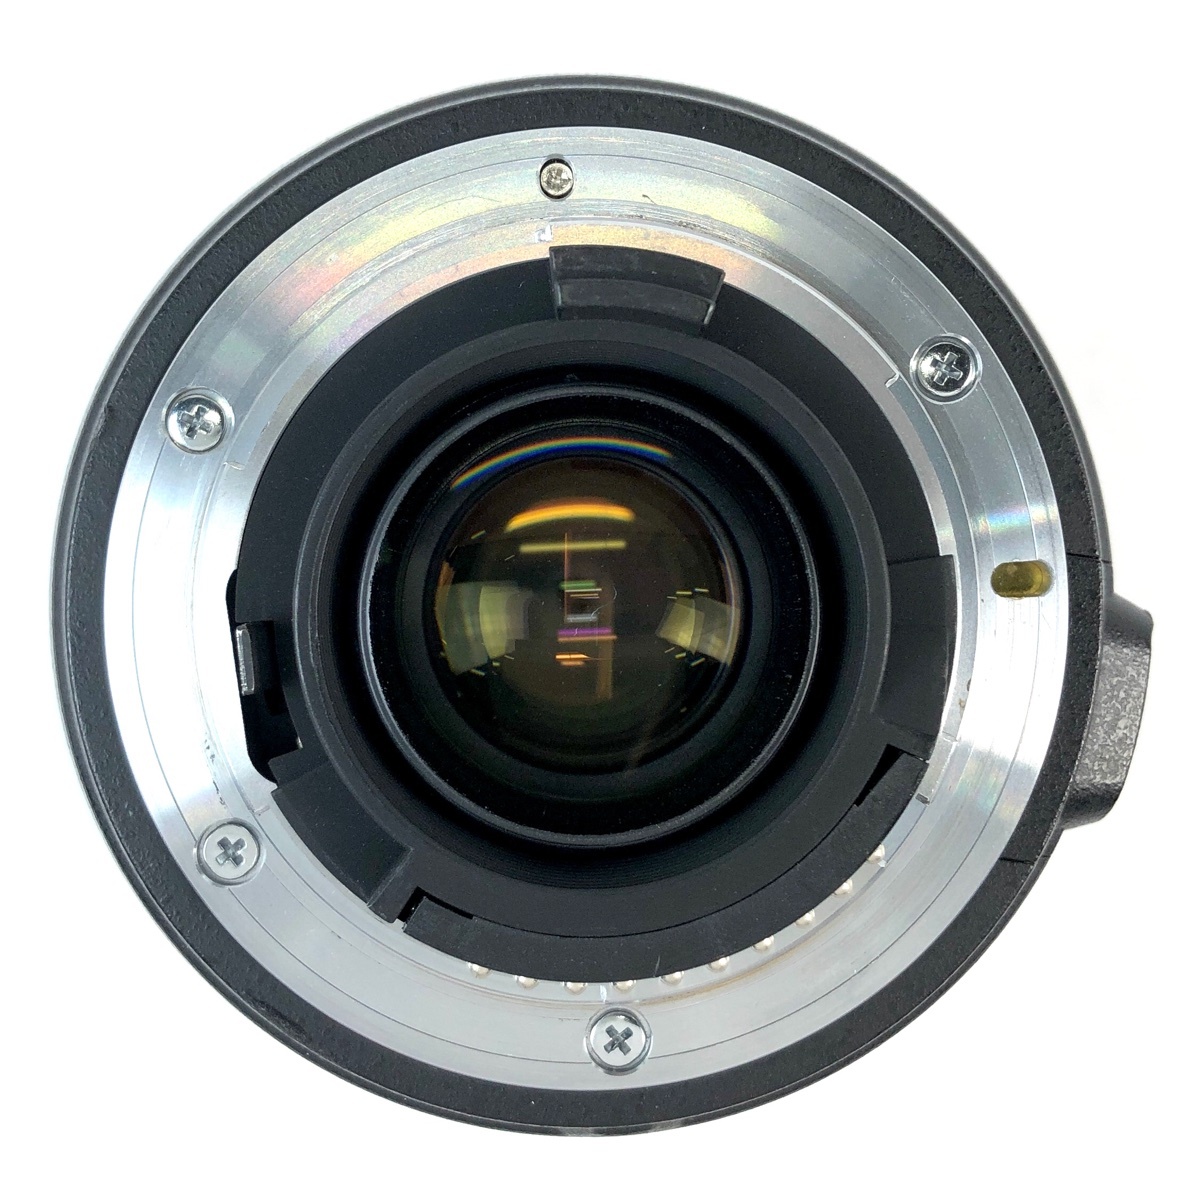 ニコン Nikon D200 + AF-S NIKKOR 24-85mm F3.5-4.5G ED デジタル 一眼レフカメラ 【中古】_バイセル 31051_8